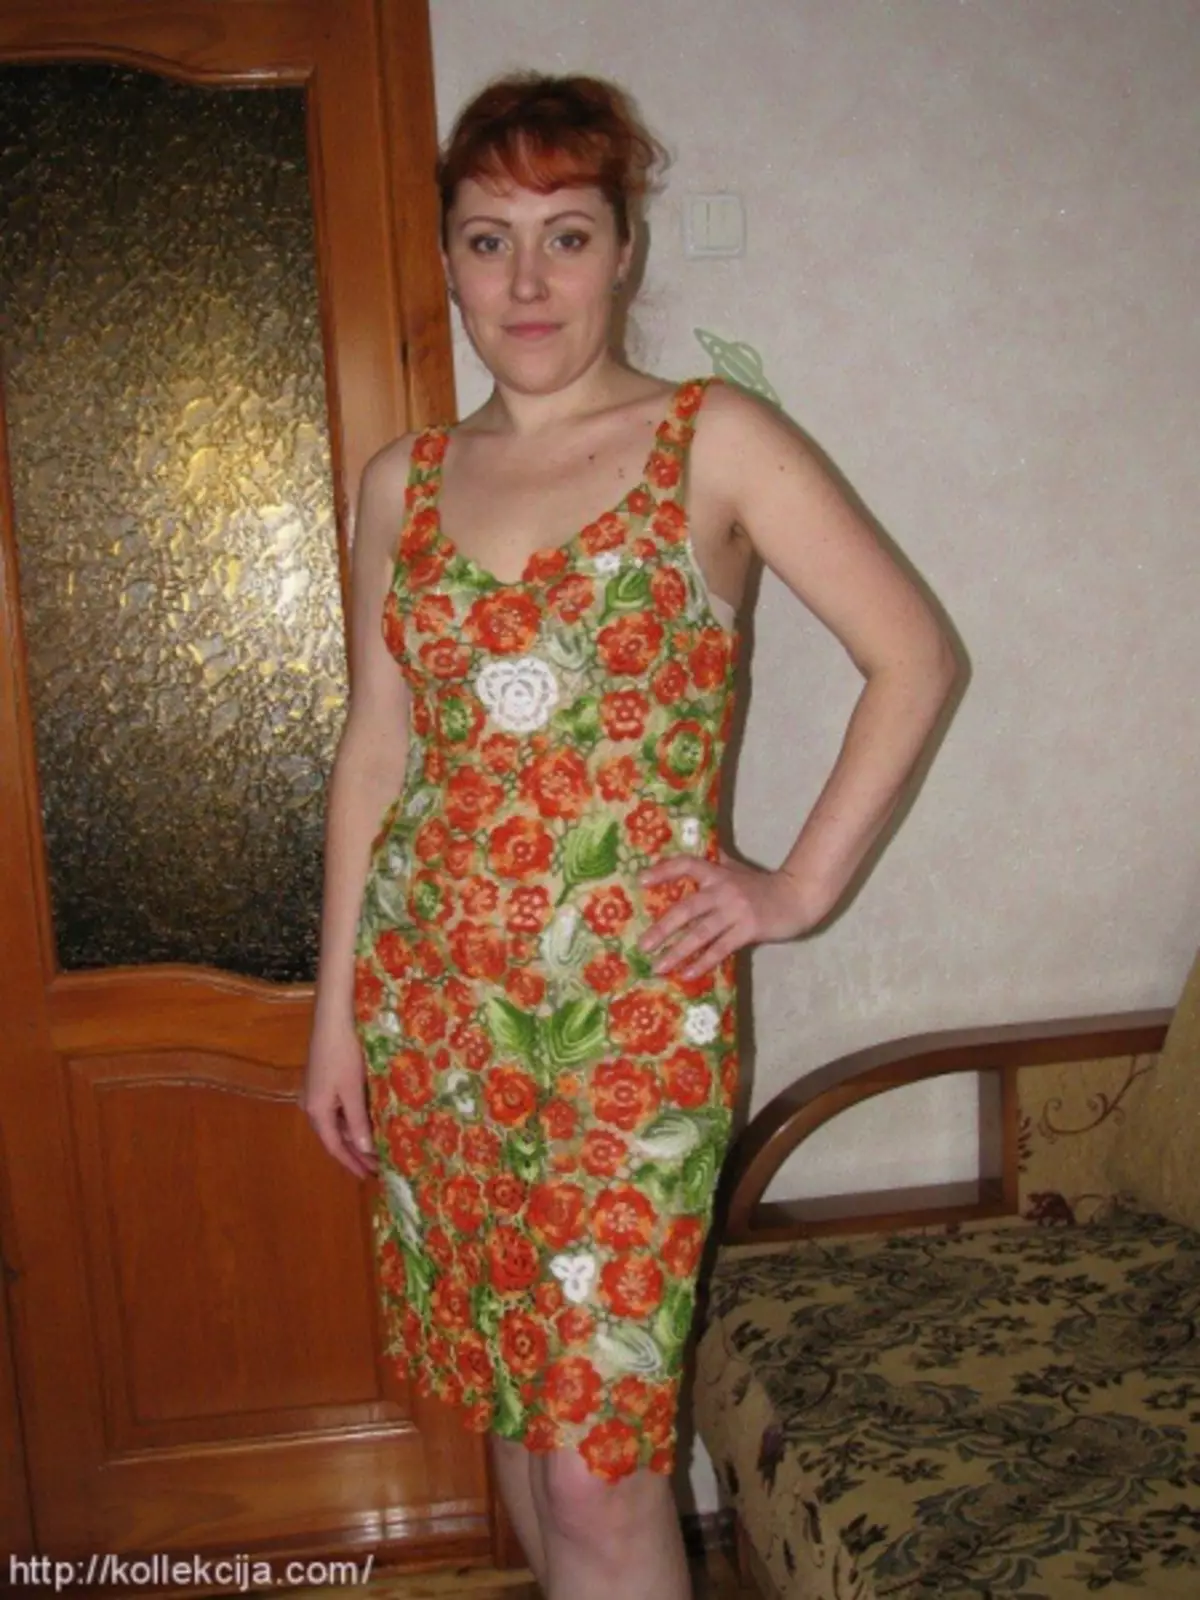 השמלה של אירית תחרה עם ערכות: כיתה מאסטר עם תמונה